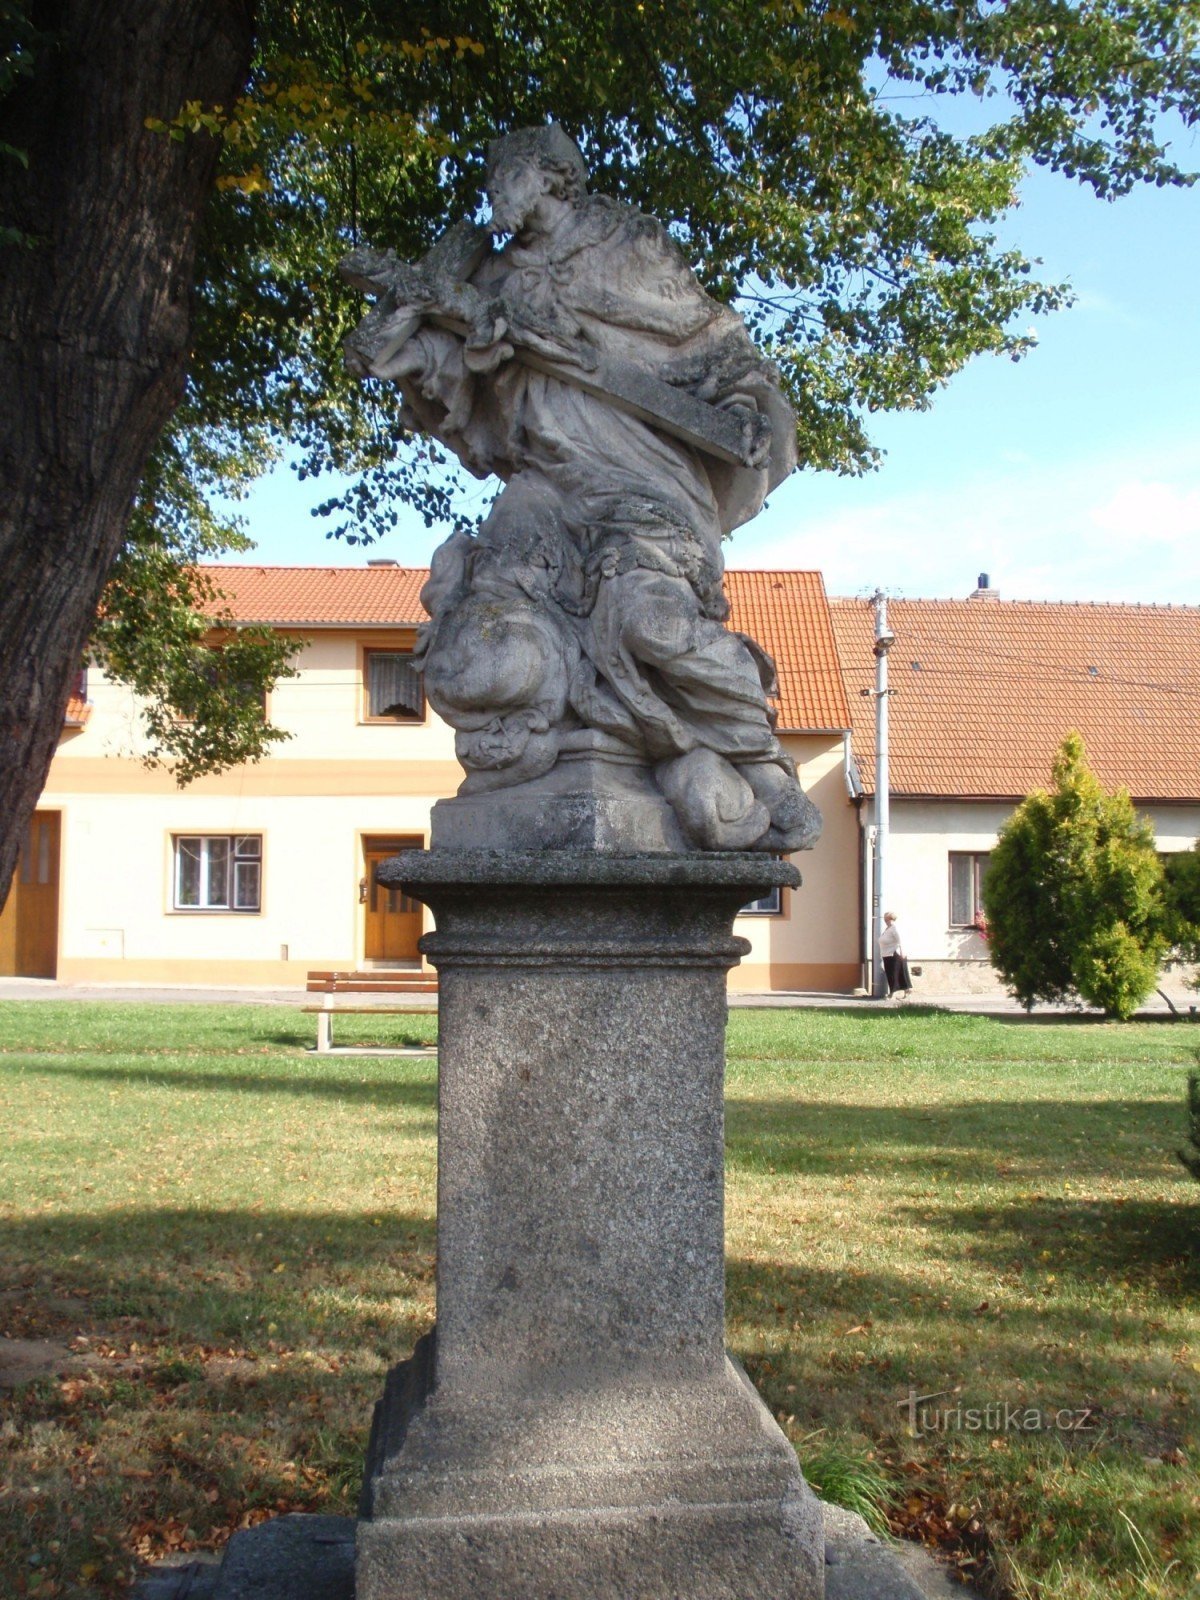 Svatojanská socha ve Vladislavi, autor: Isolda11